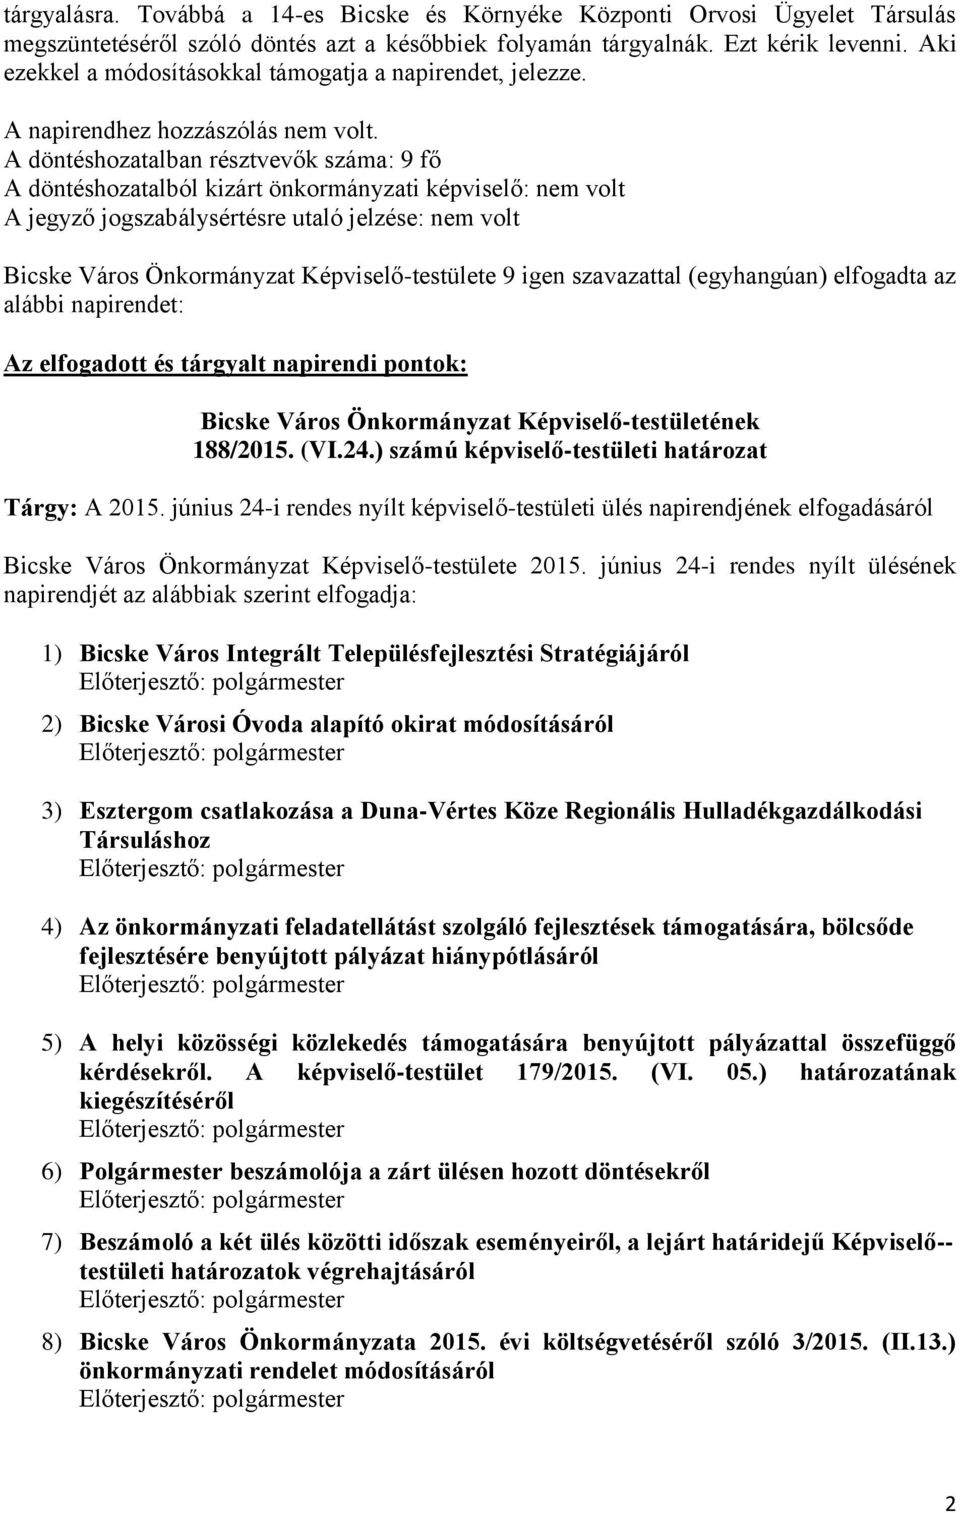 JEGYZŐKÖNYV Bicske Város Önkormányzat Képviselő-testületének rendes nyílt  üléséről - PDF Ingyenes letöltés